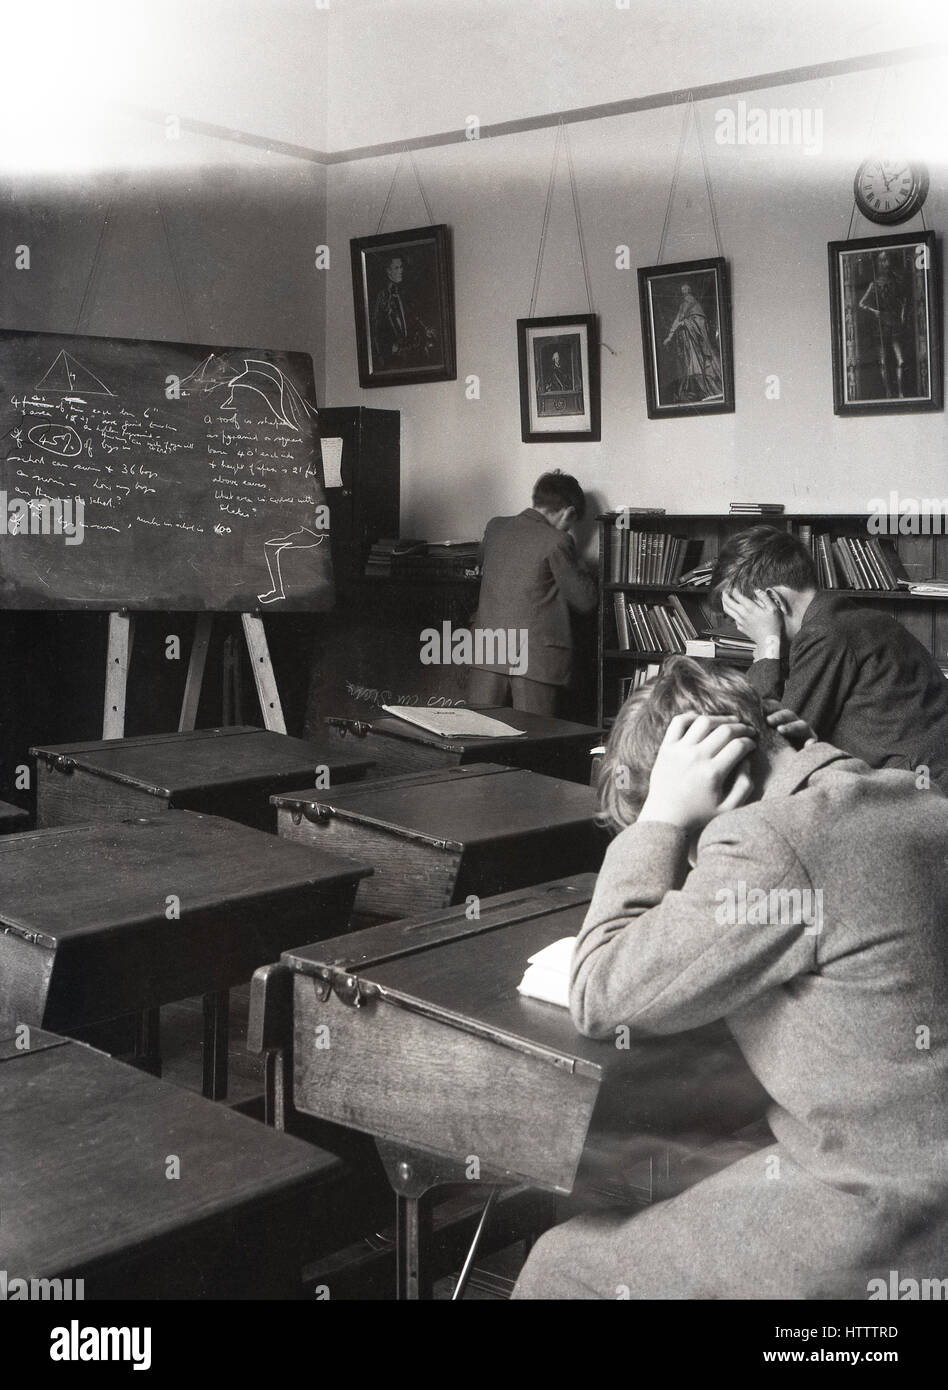 Années 1930, historiques, deux garçons de l'école au travail acharné de la révision à un bureau dans une salle de classe, en Angleterre. Banque D'Images